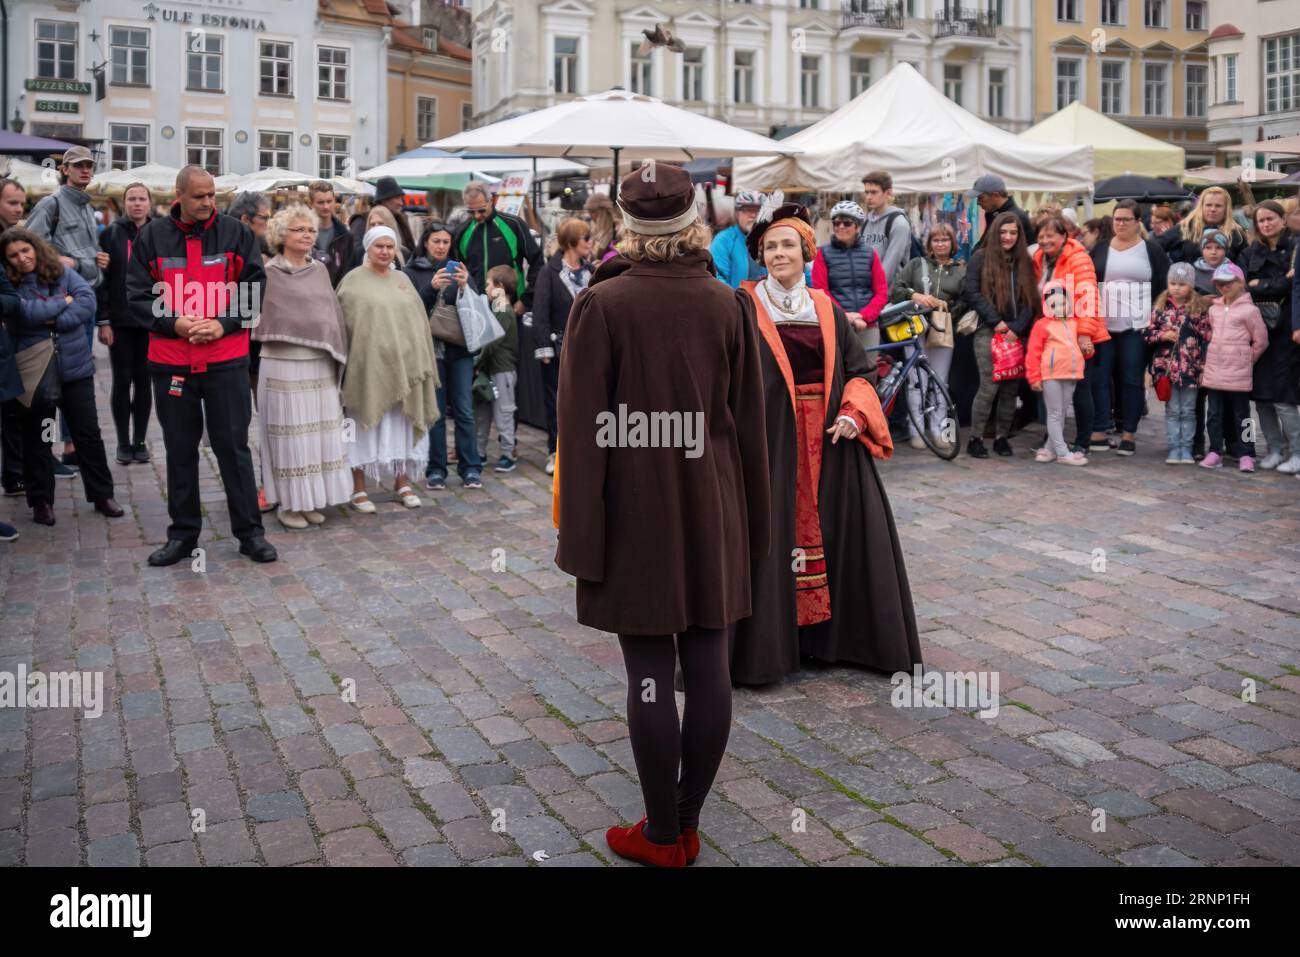 Spettacolo di danza tradizionale al Festival medievale di Piazza del Municipio - Tallinn, Estonia Foto Stock